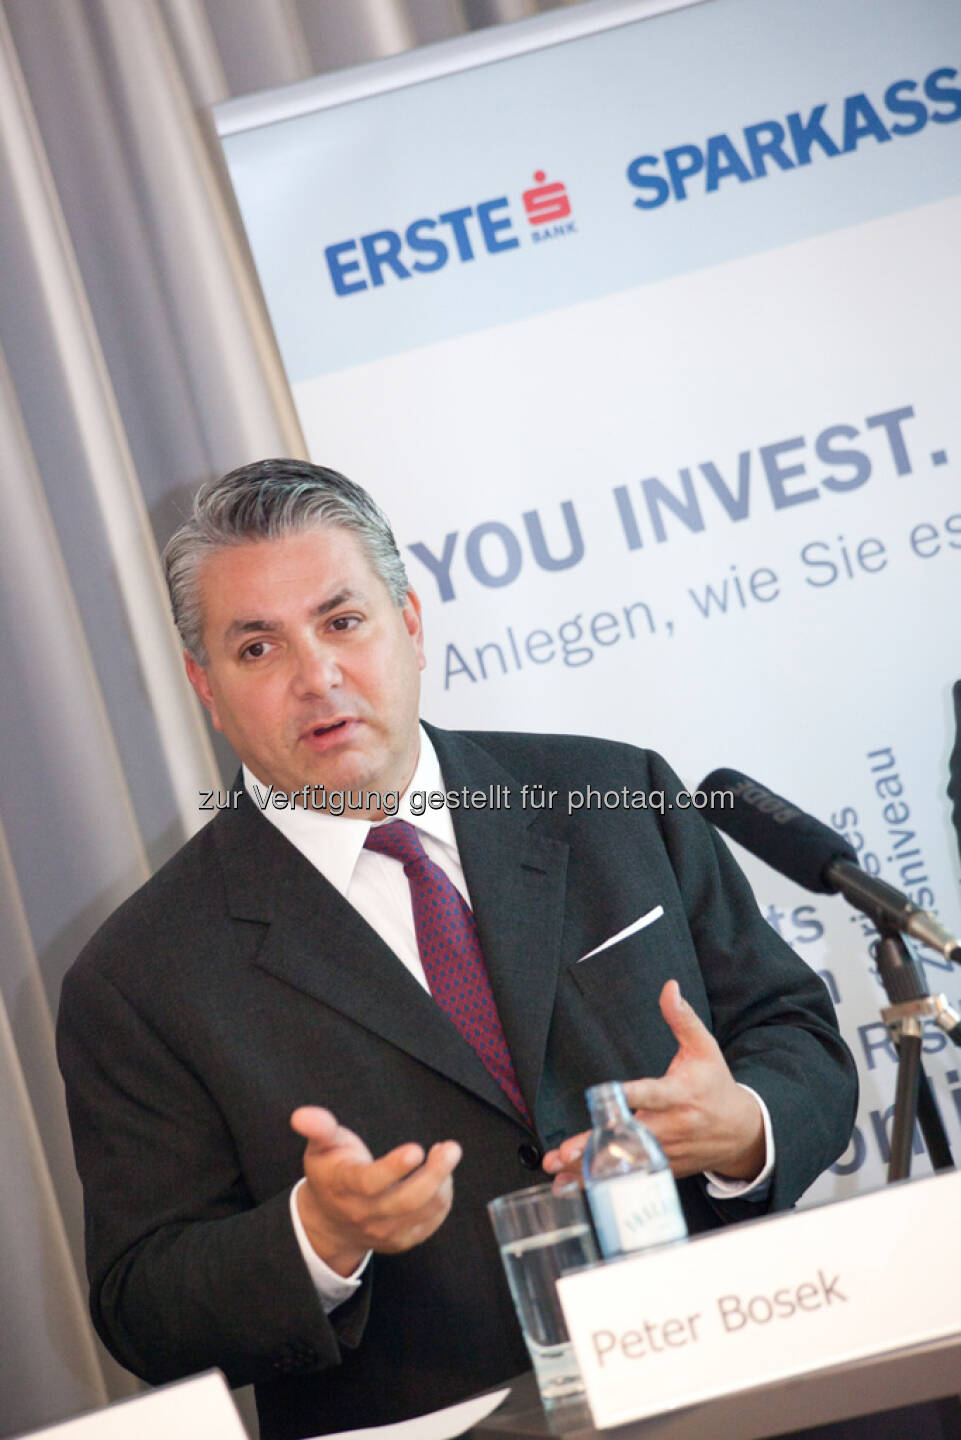 Peter Bosek (Erste Bank Österreich Vorstand)